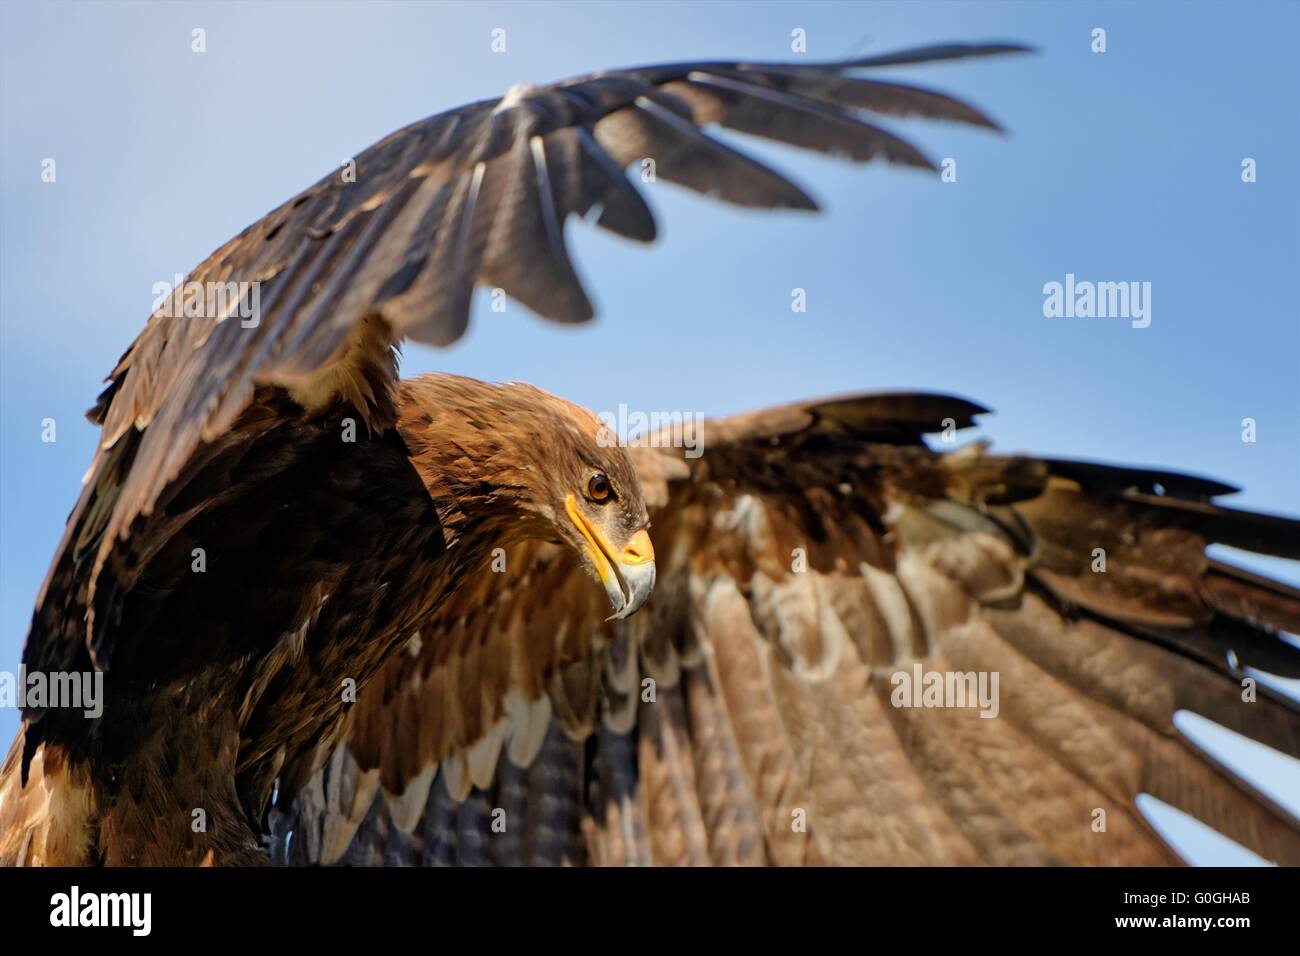 Steppe eagle Stock Photo